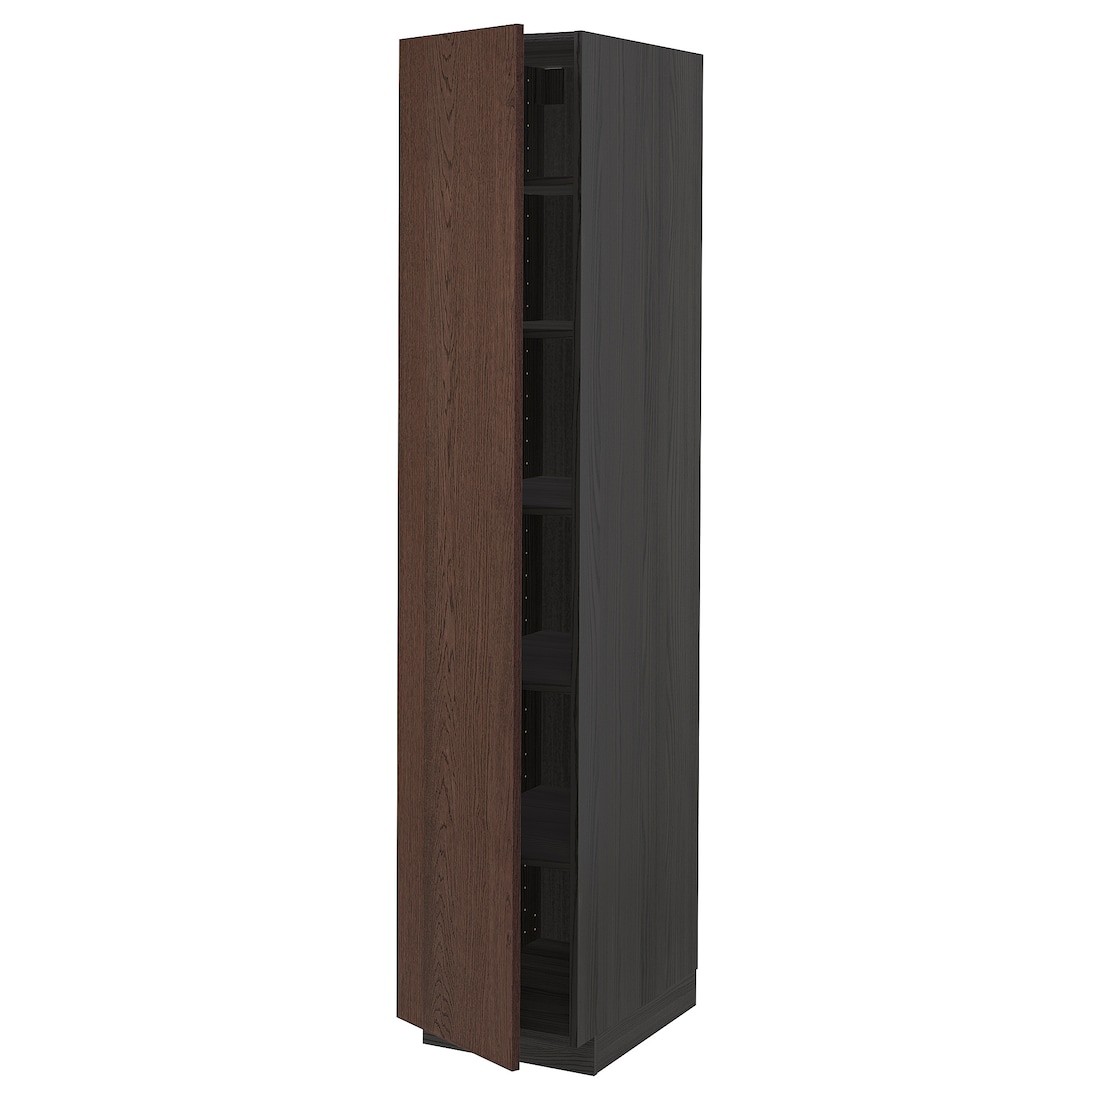 METOD МЕТОД Высокий шкаф с полками, черный / Sinarp коричневый, 40x60x200 см